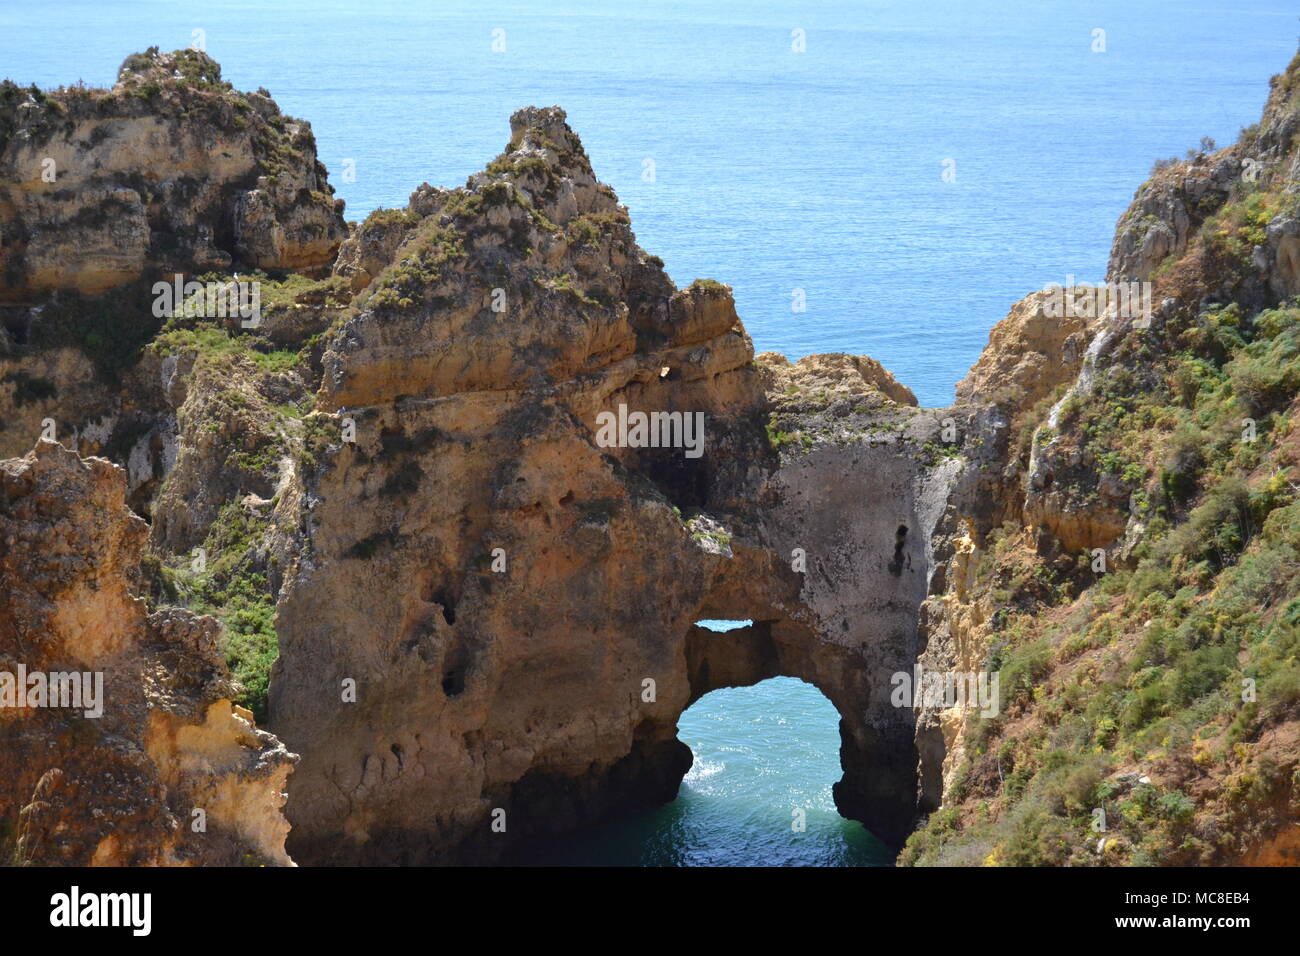 Vistas de la costa atlantica portuguesa en el Algarve Stock Photo